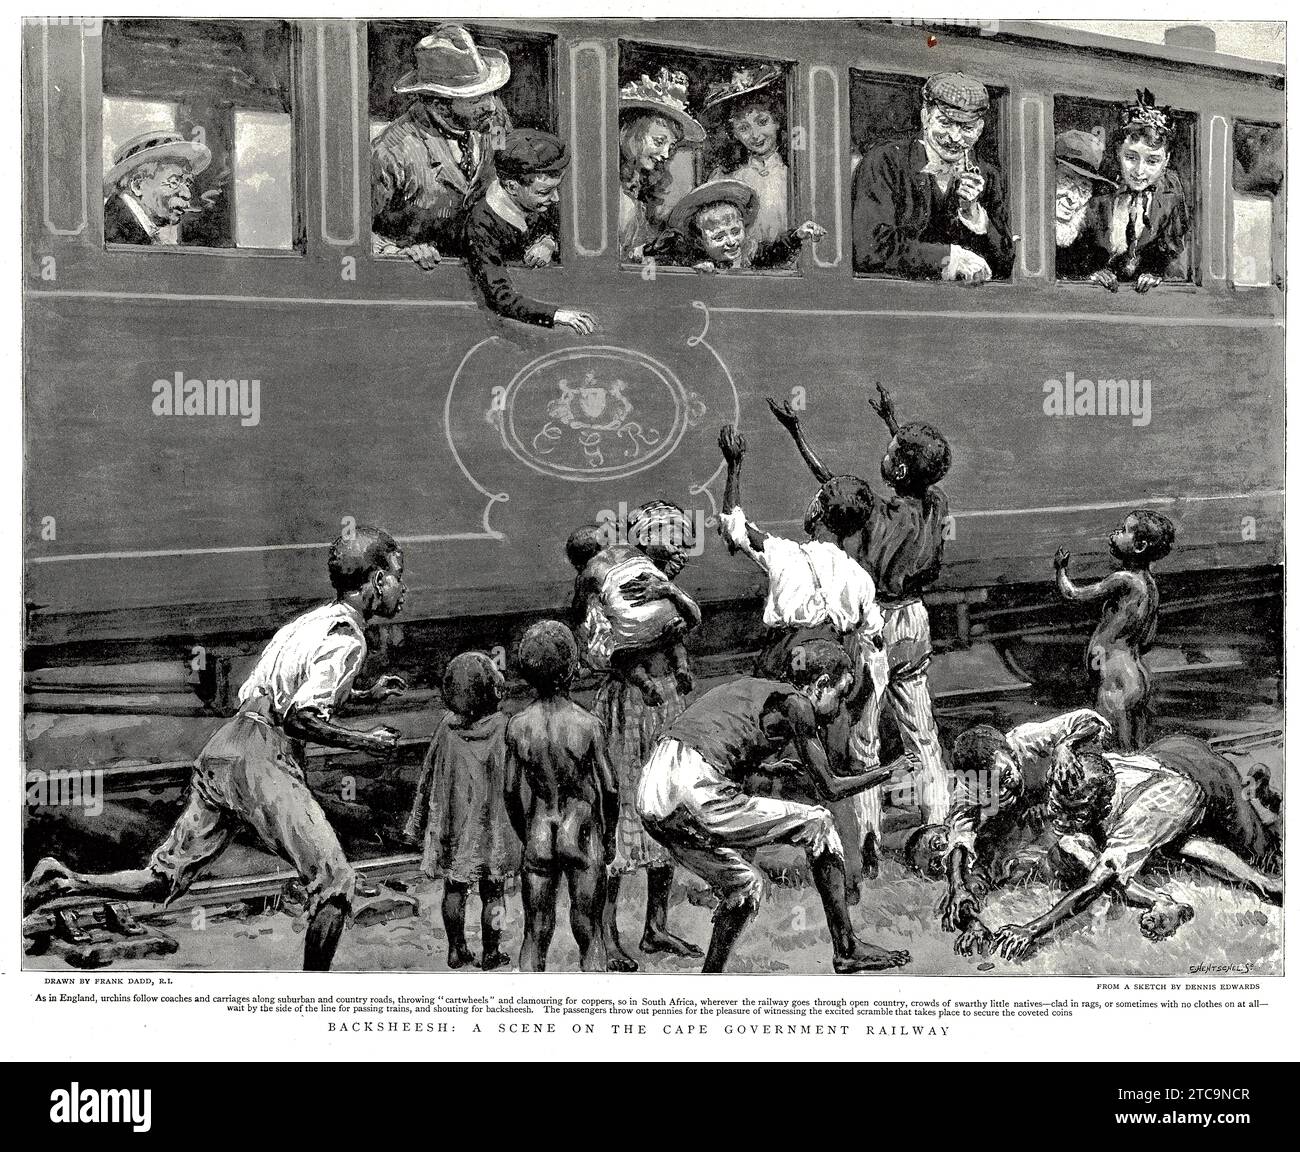 Backsheesh - una scena sulla ferrovia del governo del capo in Sud Africa, con i passeggeri del treno che gettano penny per mendicare dalla linea ferroviaria. Pubblicato intorno al 1896. Foto Stock